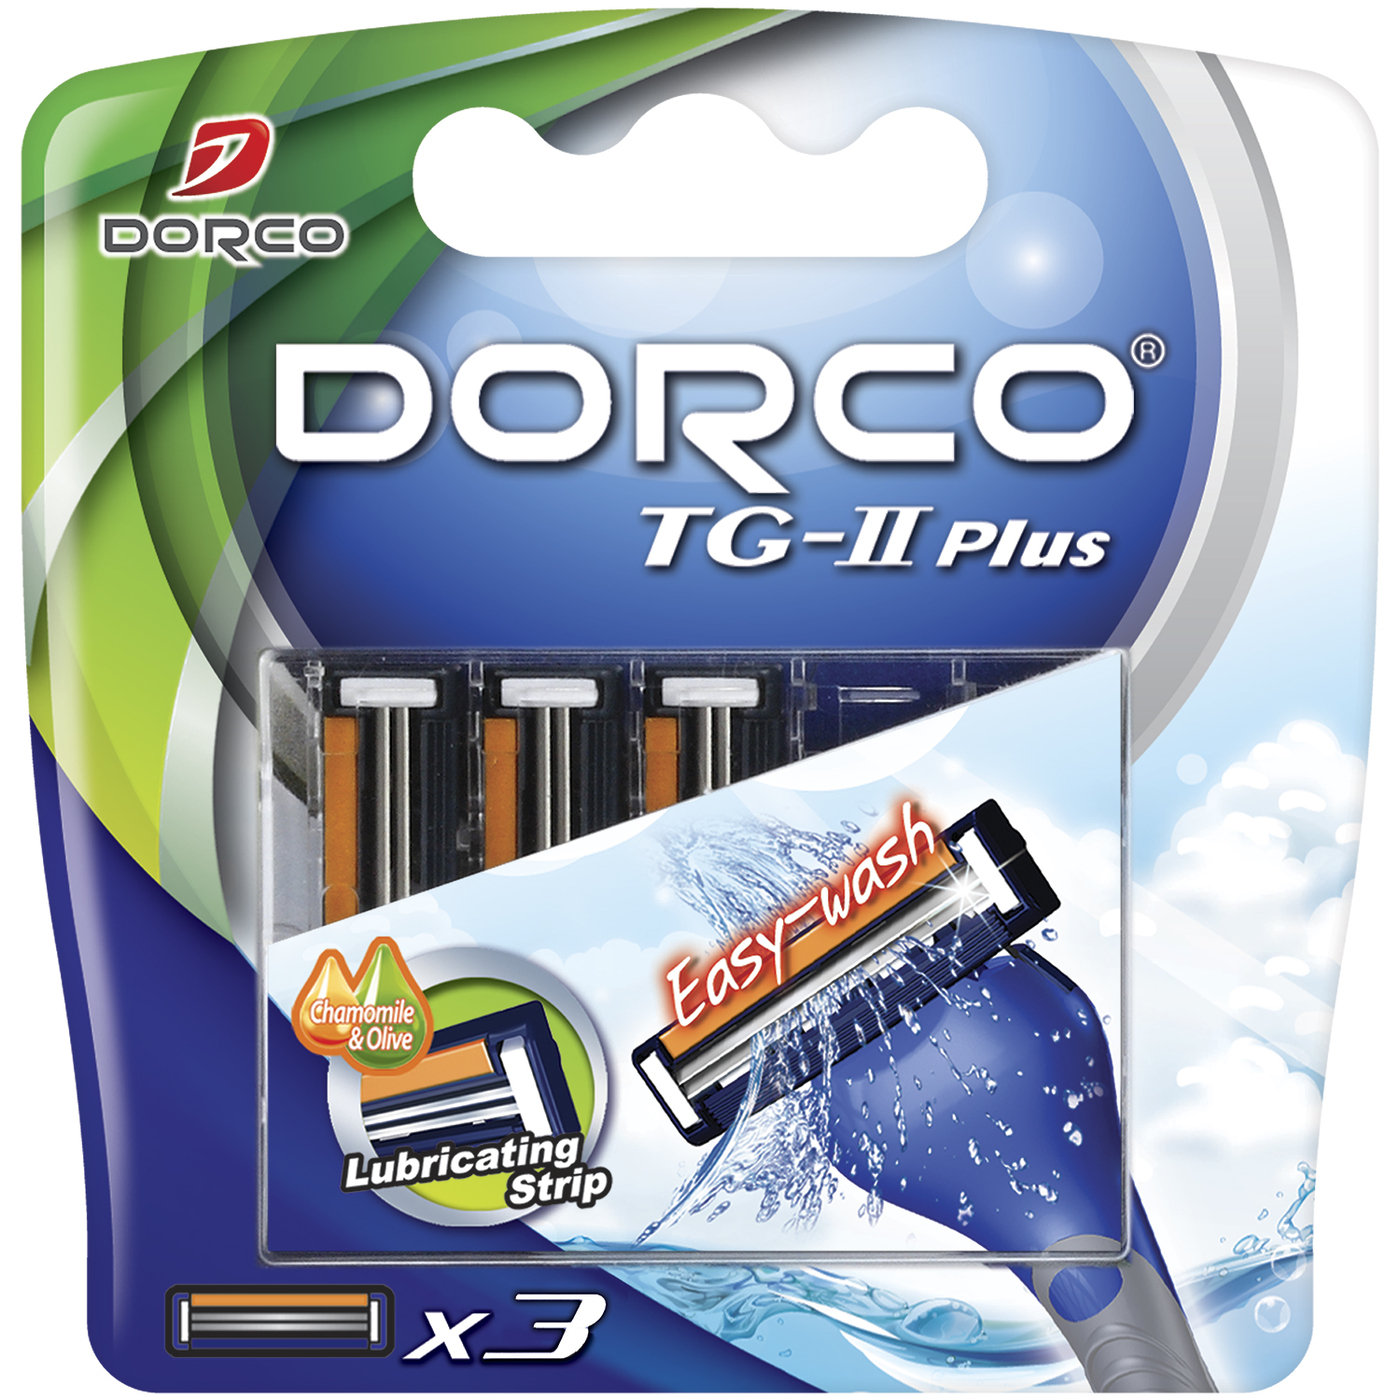 Бритья dorco. Сменные кассеты Dorco TG-II Plus. Сменные лезвия,Dorco TG-II Plus 10шт. Dorco бритвенный станок TG-II Plus станок + 5 кассет. Dorco tg2 Plus сменные кассеты.